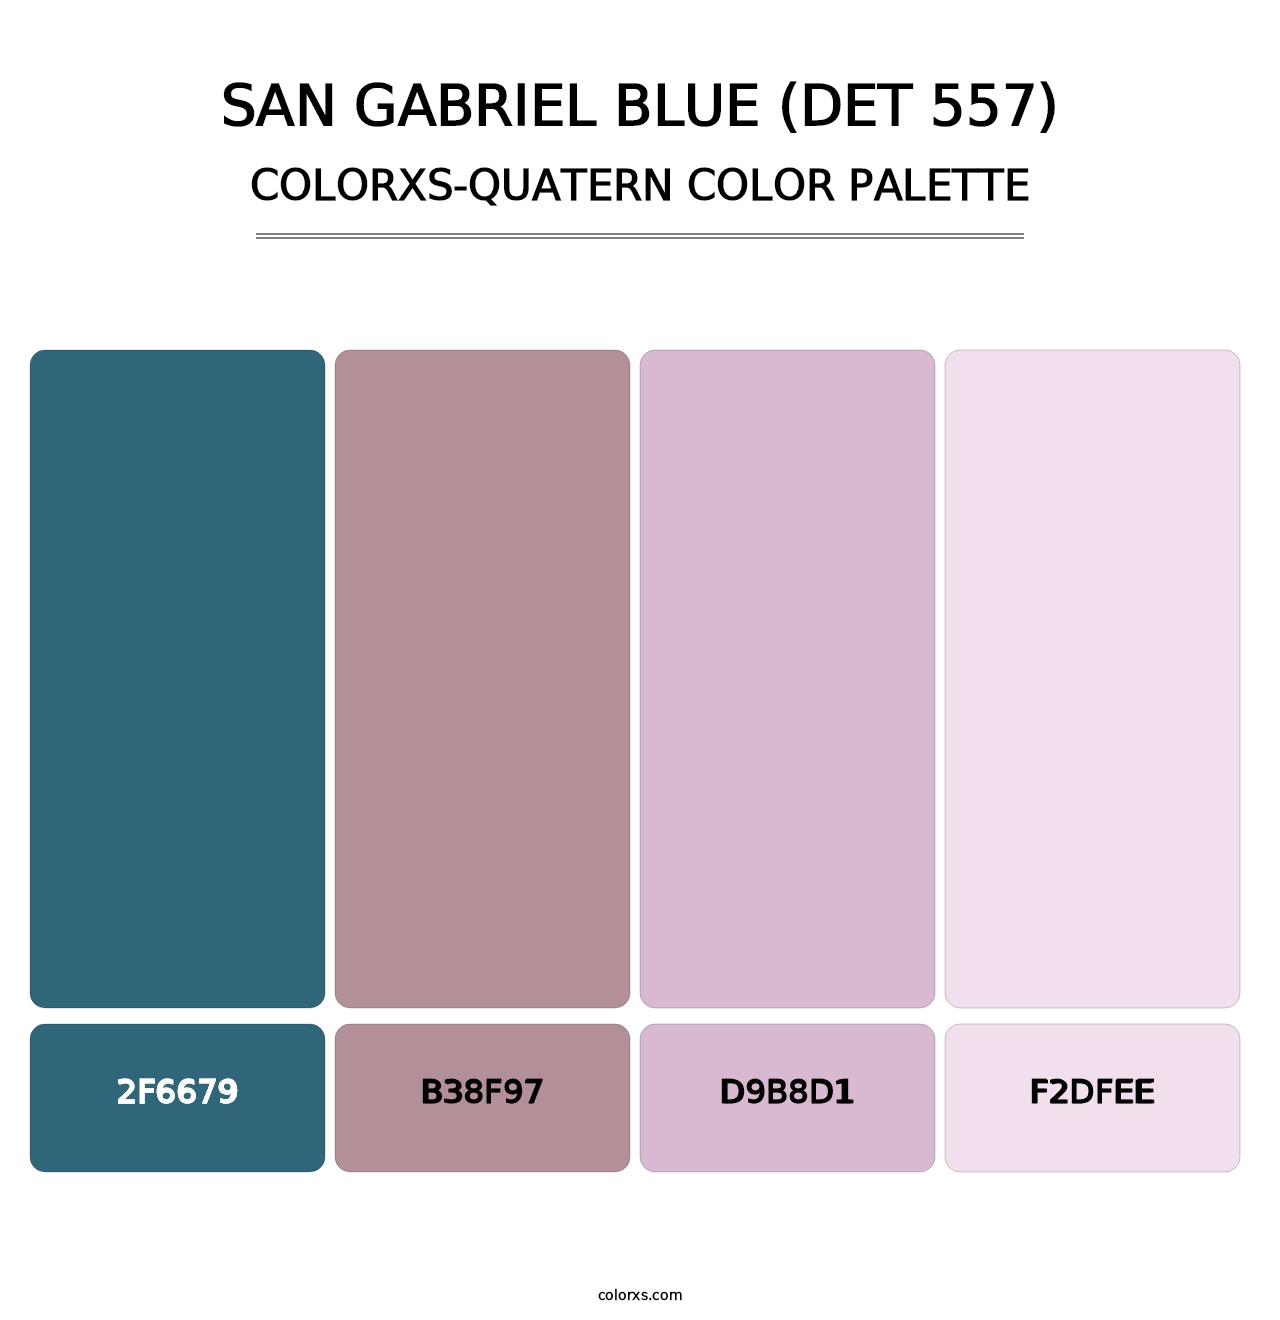 San Gabriel Blue (DET 557) - Colorxs Quatern Palette